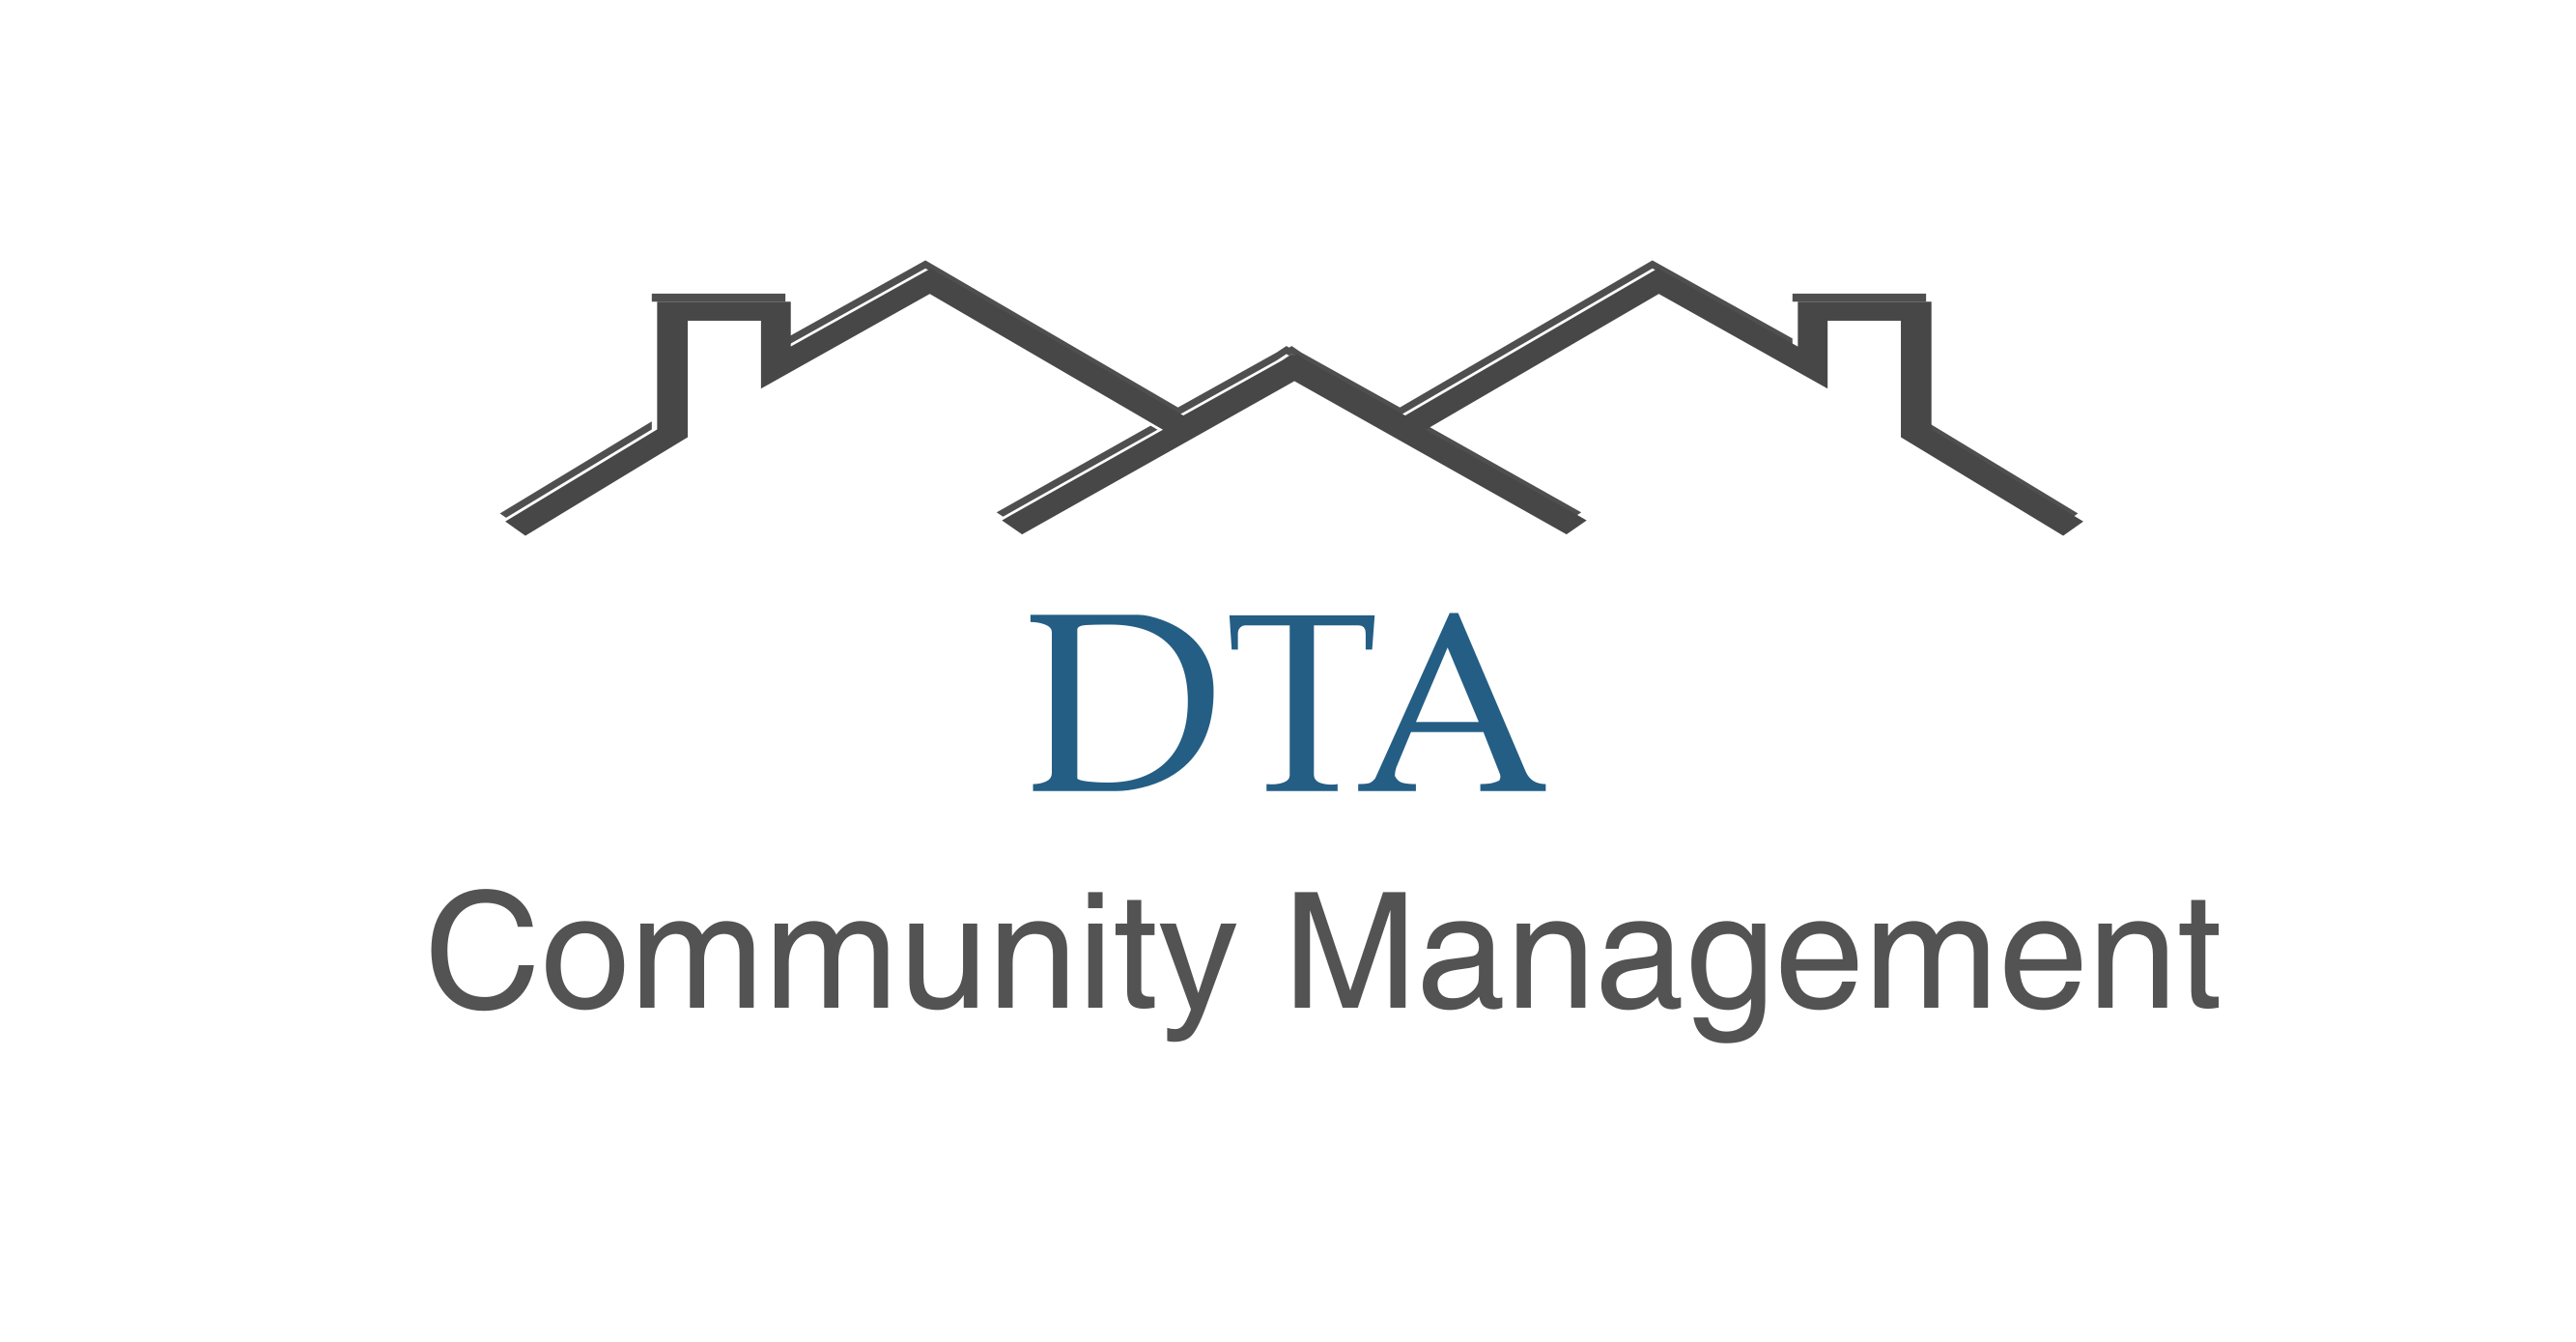 DTA Community Management Services, Inc. logo